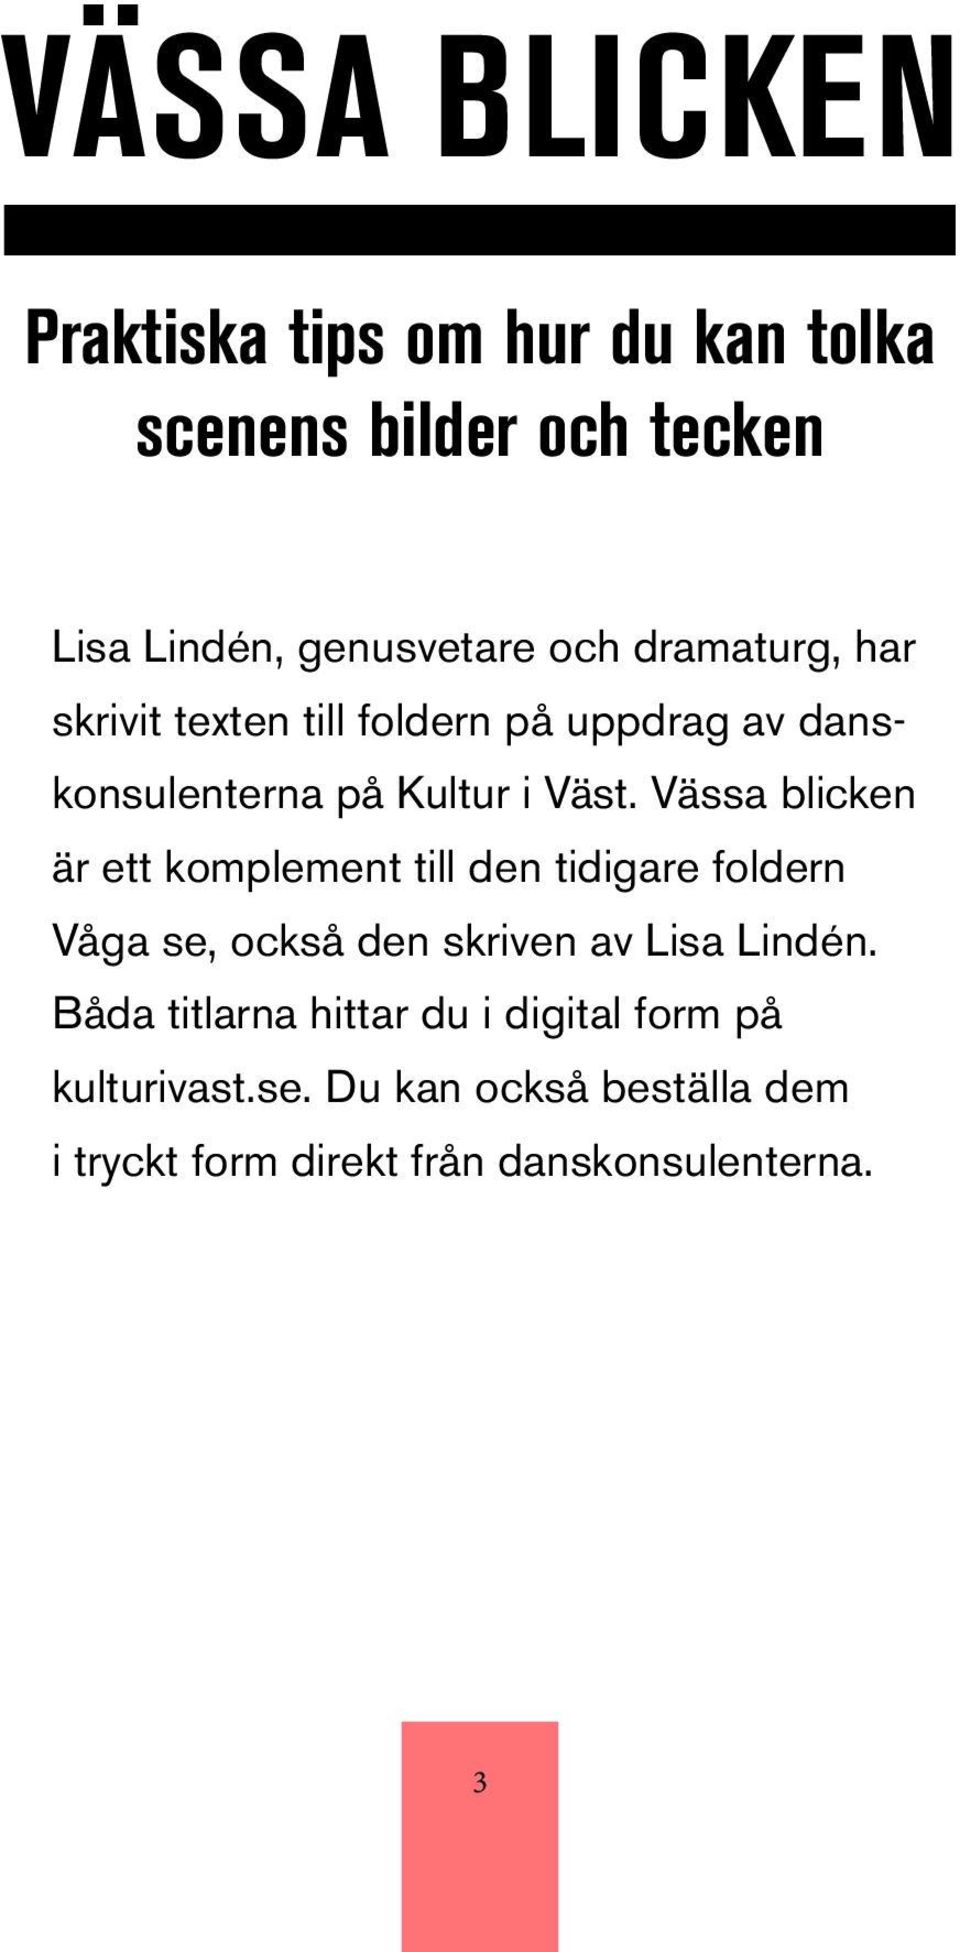 Vässa blicken är ett komplement till den tidigare foldern Våga se, också den skriven av Lisa Lindén.